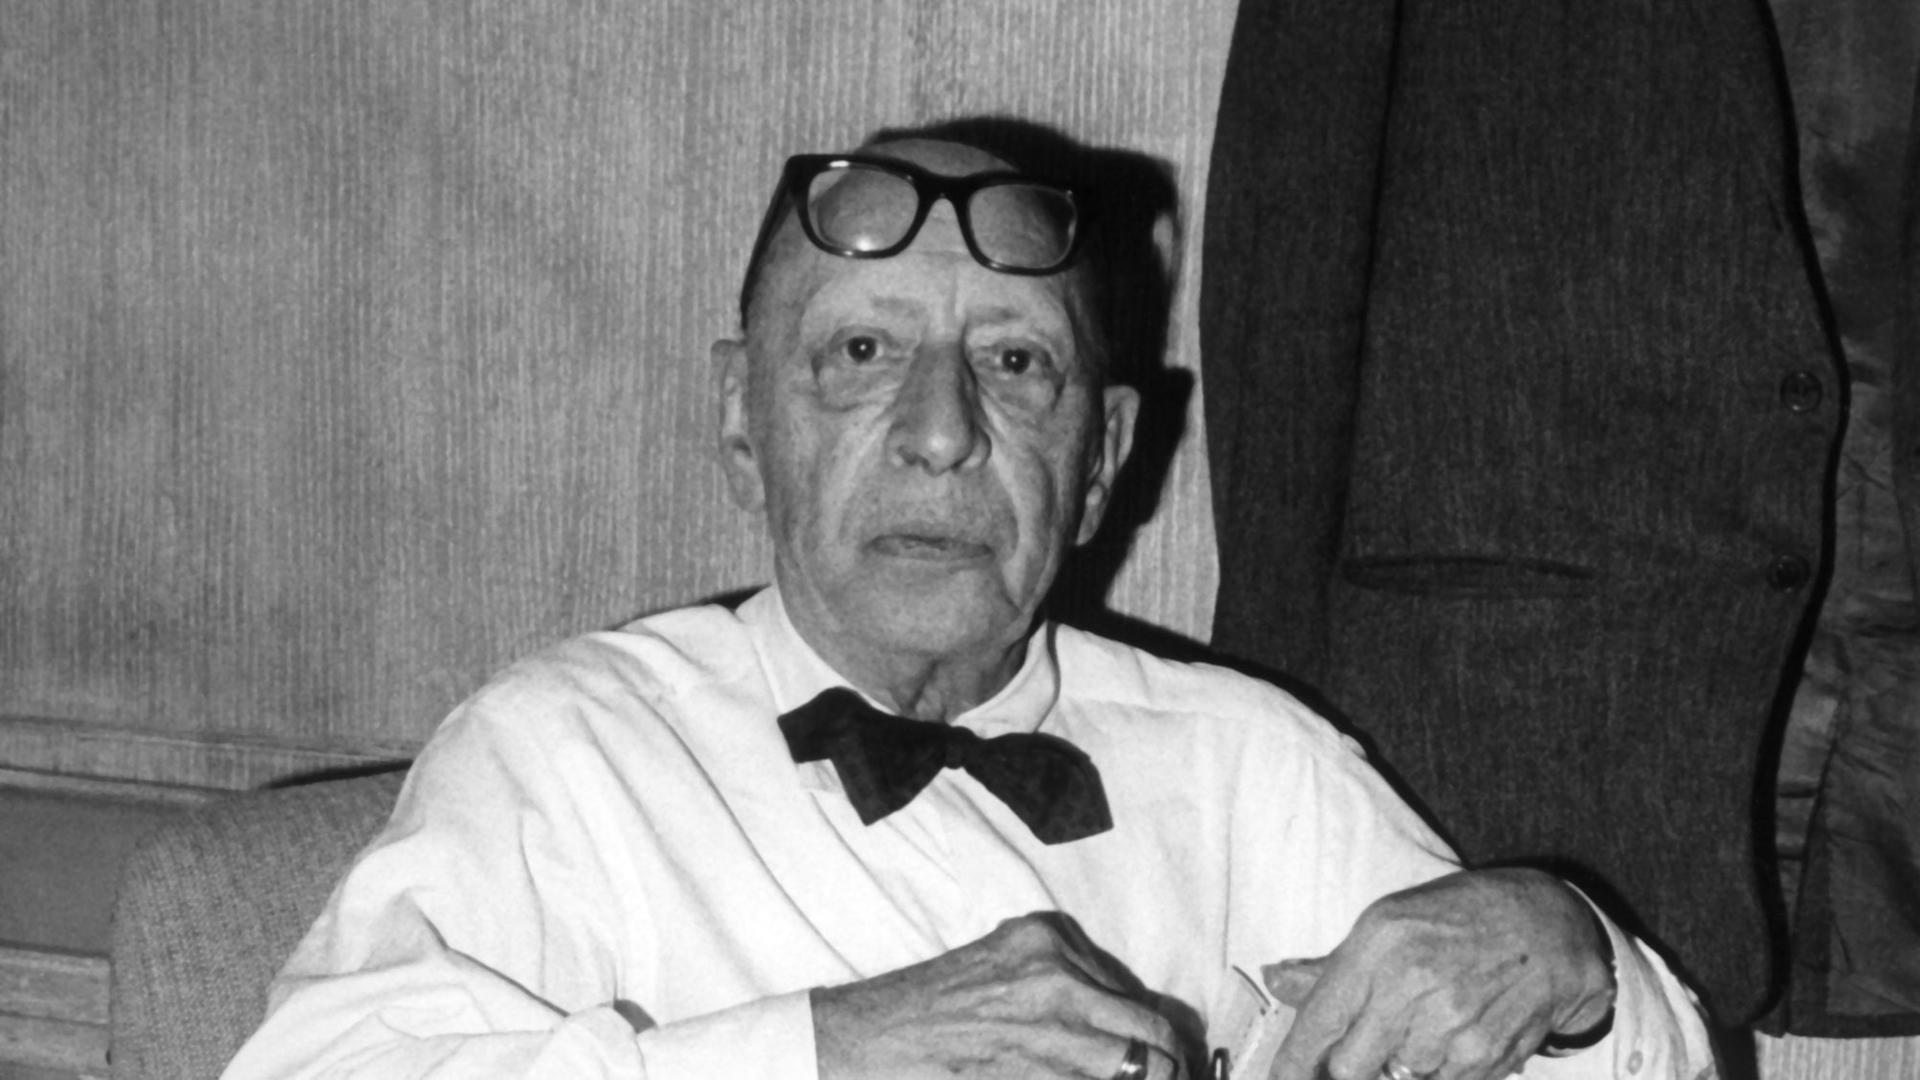 Der Komponist Igor Strawinsky mit weißem Hemd, schwarzer Fliege und einer Brille auf der Stirn.